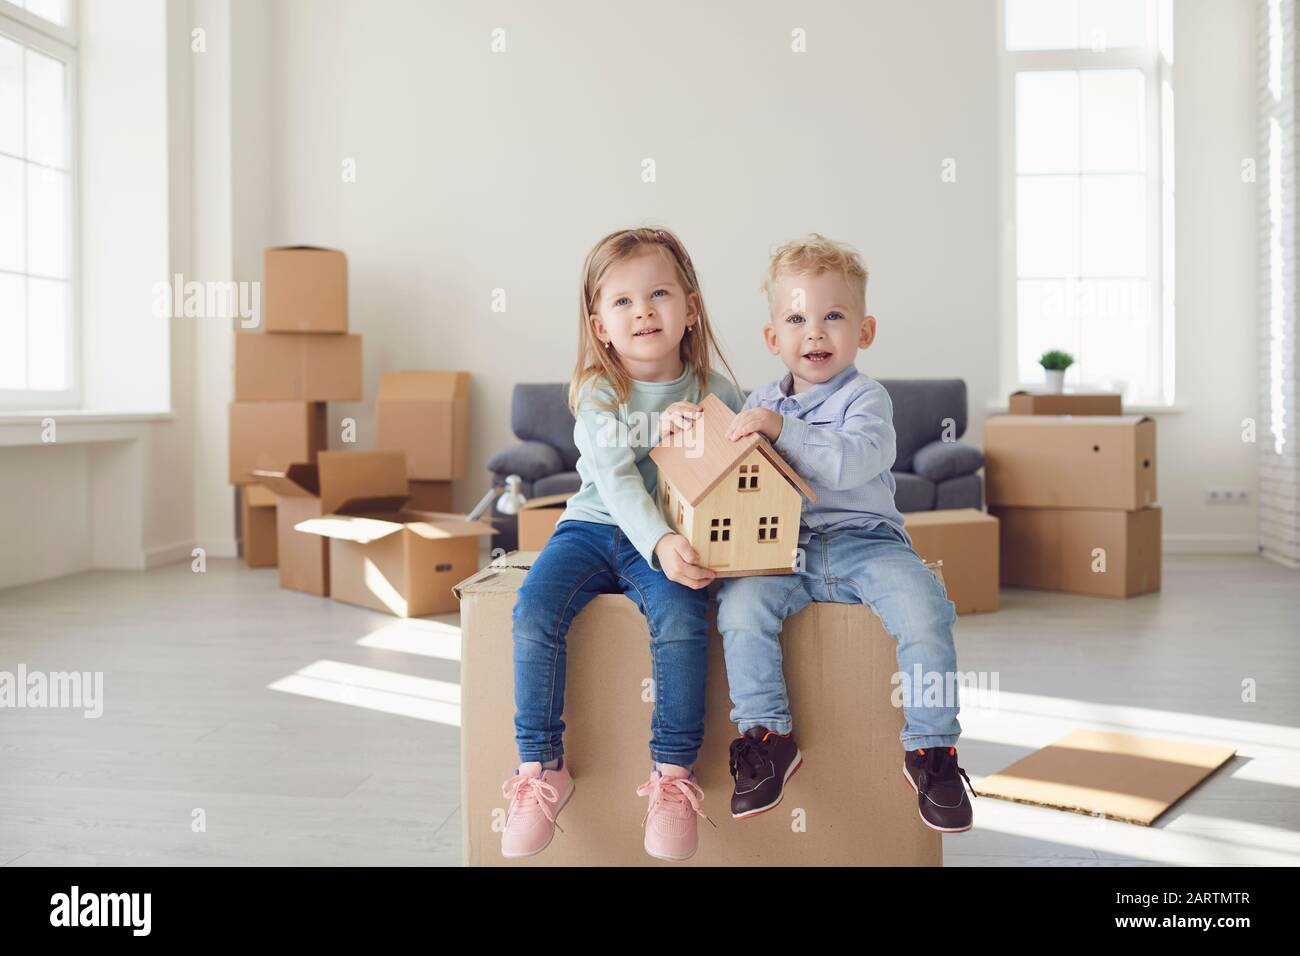 Zwei Kinder sitzen auf einer Schachtel, um sie zu bewegen und halten ein Modell eines Hauses in einem neuen hellen Raum. Stockfoto